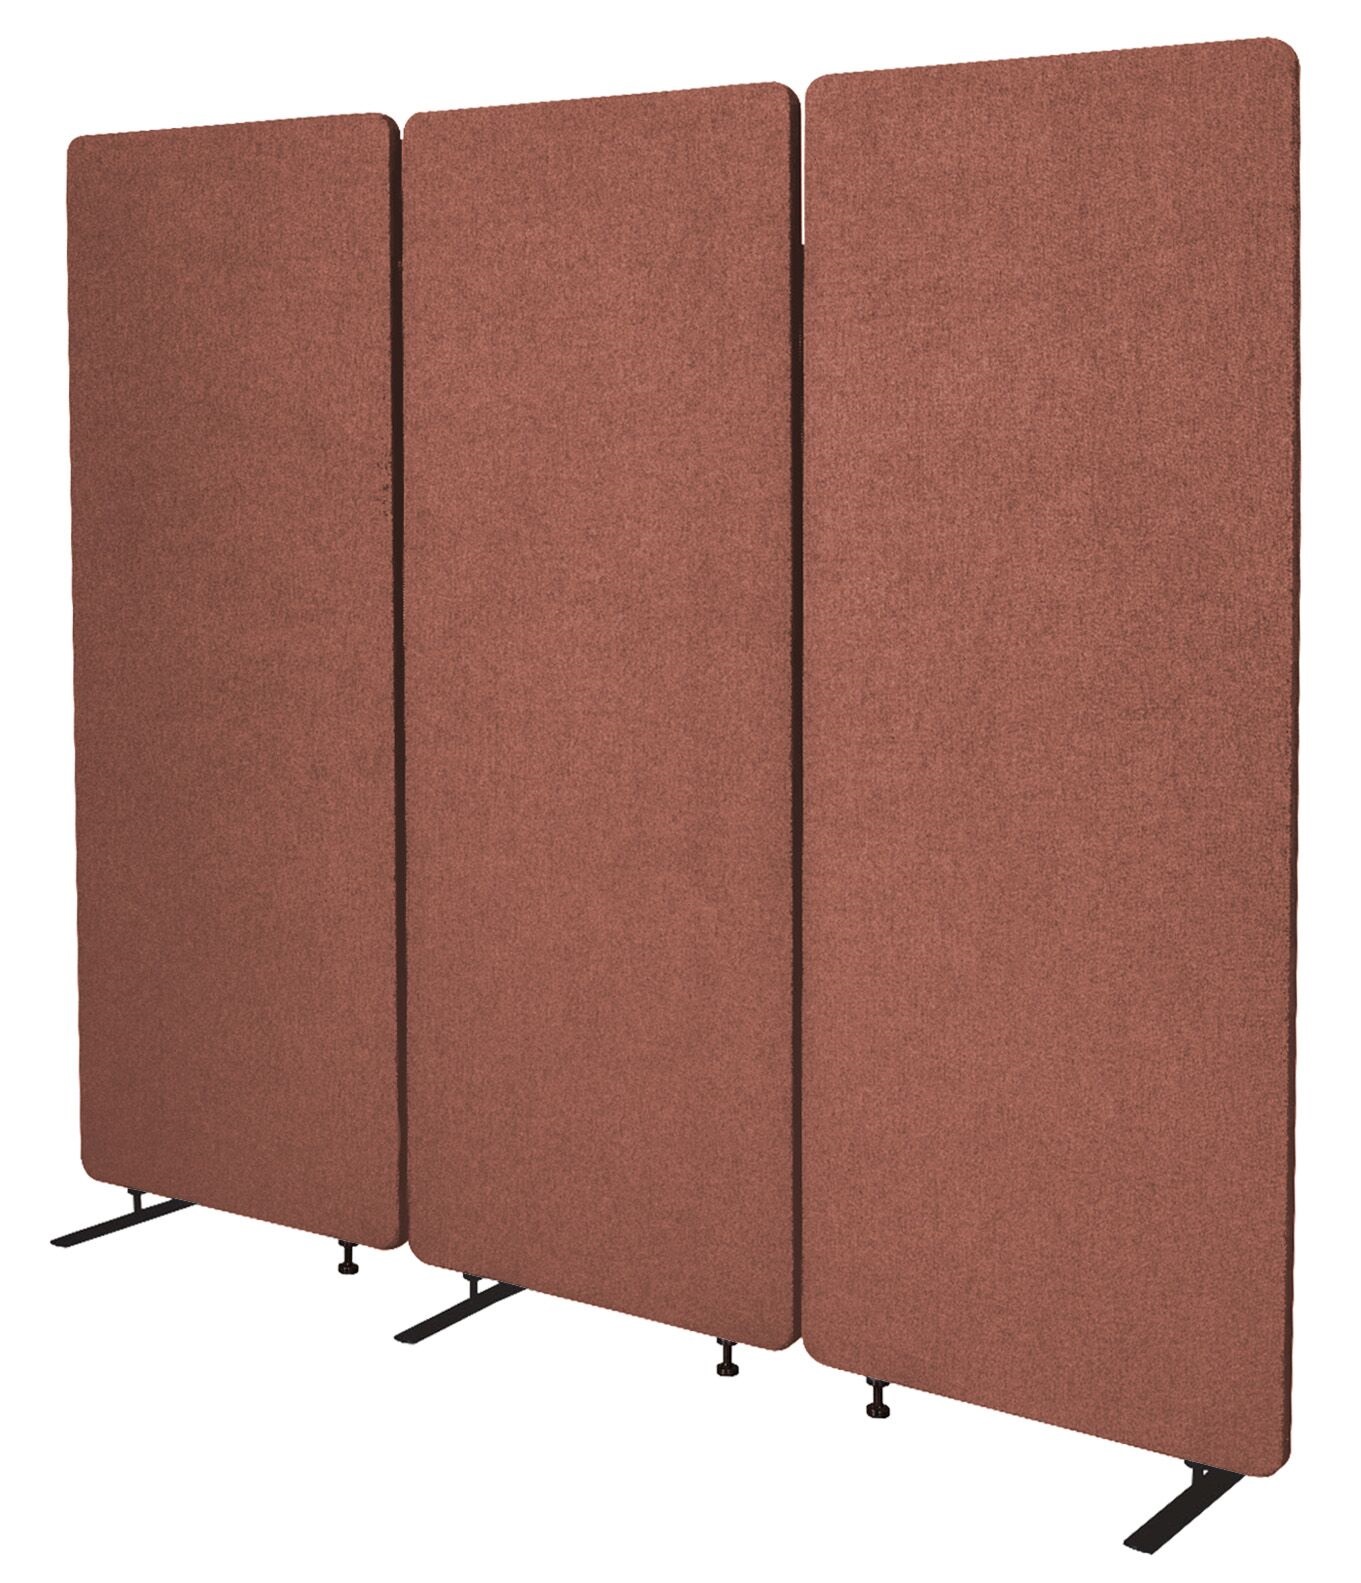 ZIP Acoustic Room Divider (Colour: Copper)